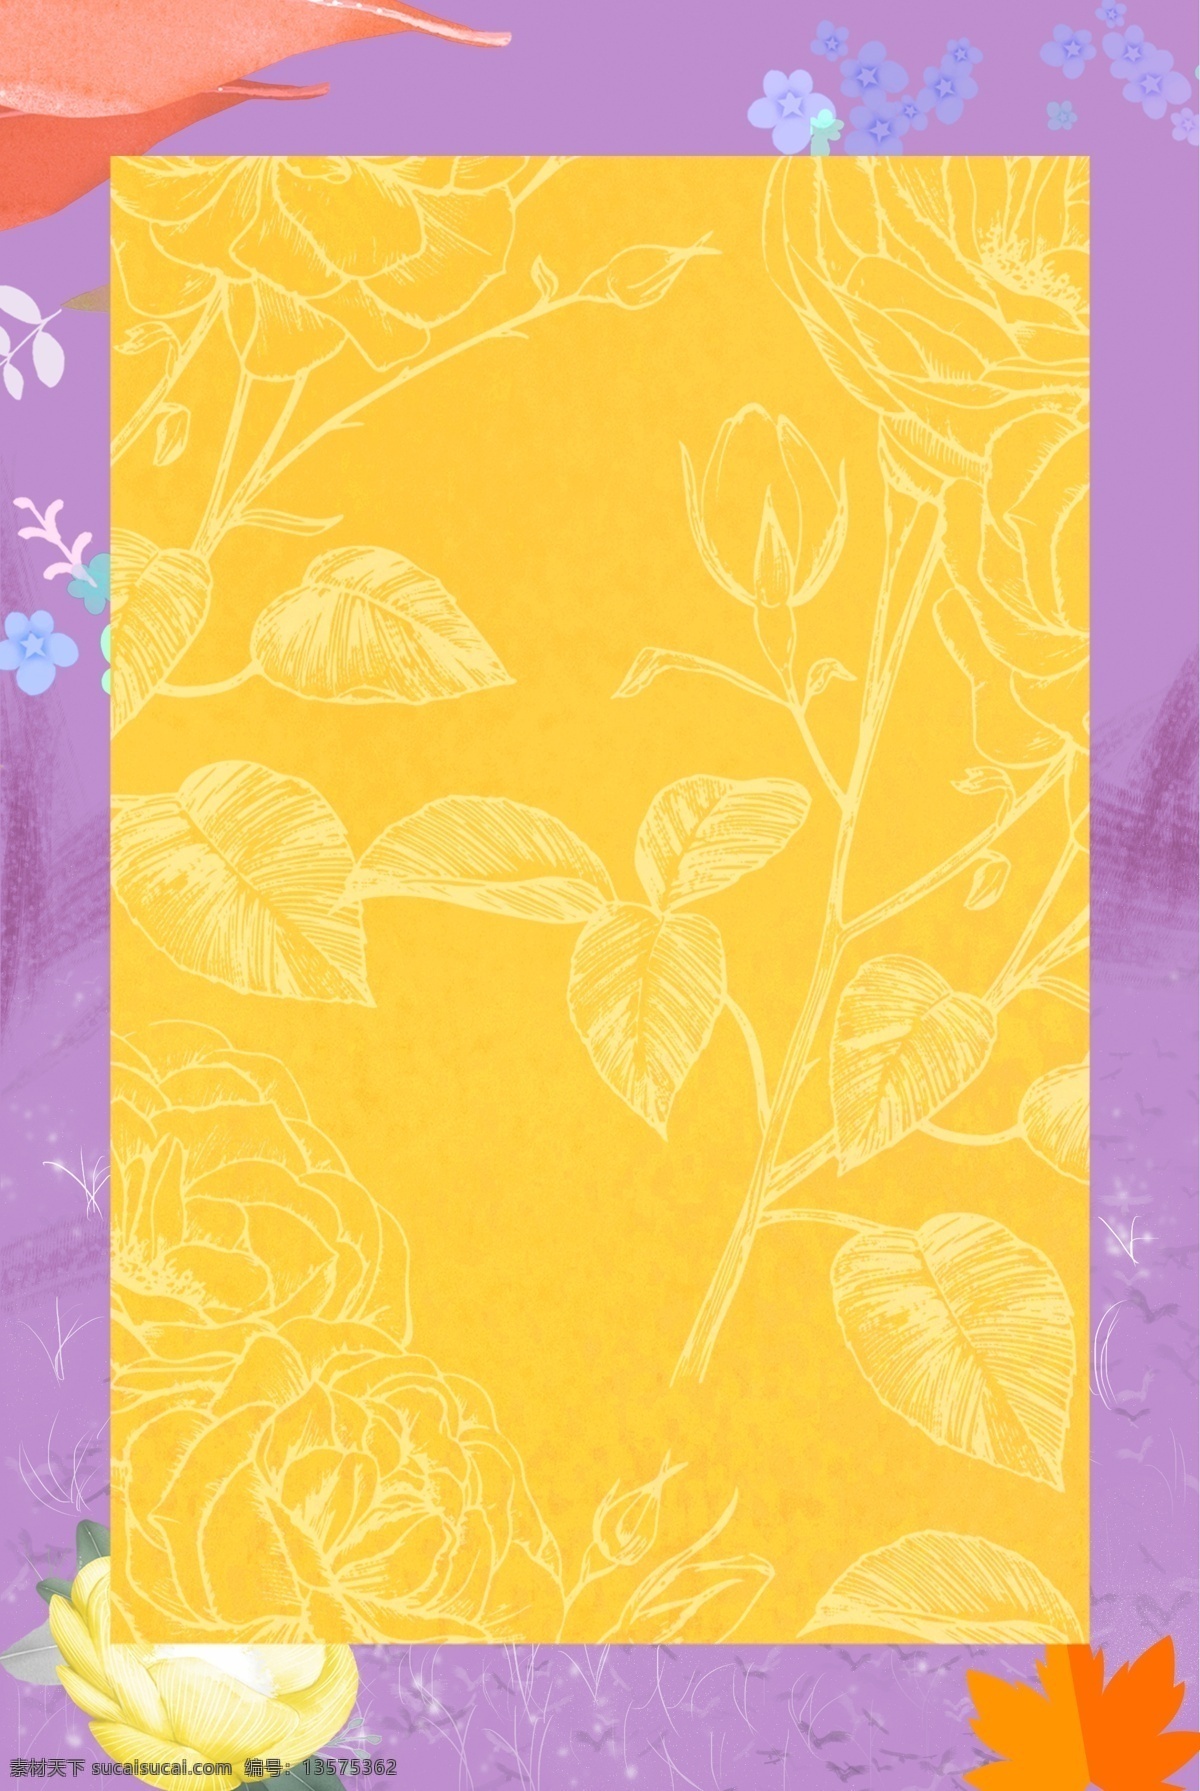 紫色 黄色 树叶 背景 图 边框 清新 原创 文艺 质感 纹理 简约 极简 扁平 海报